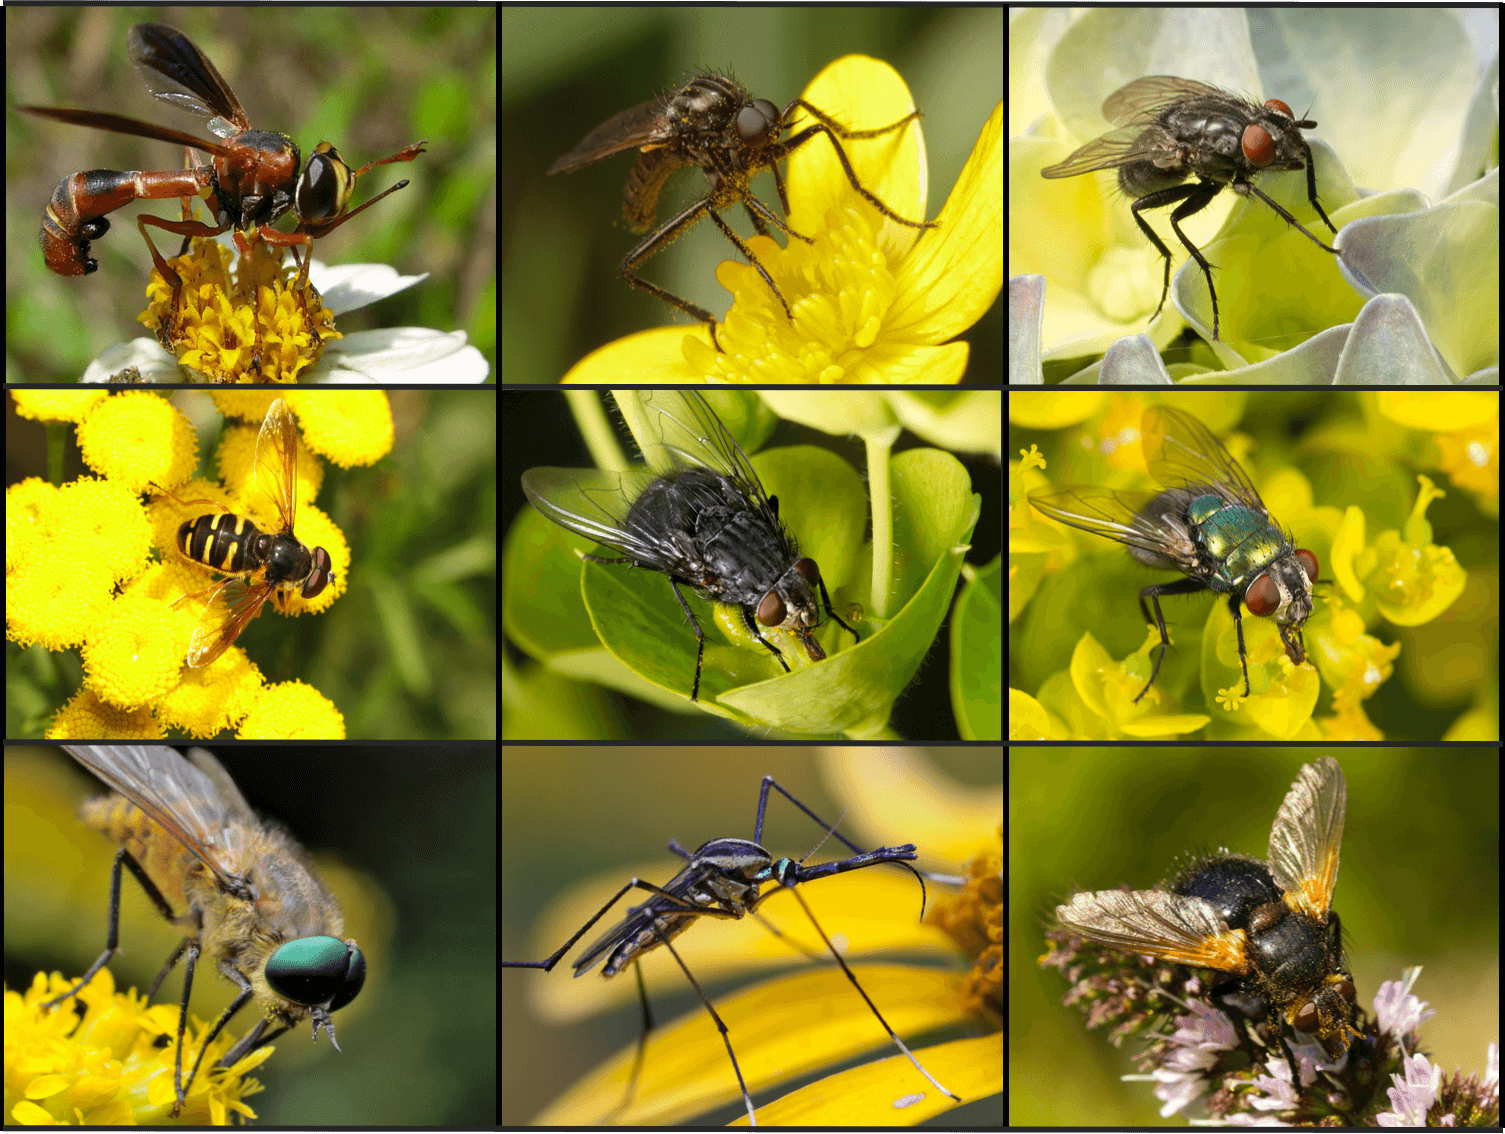 Polinización por moscas: ¿cómo polinizan las moscas?